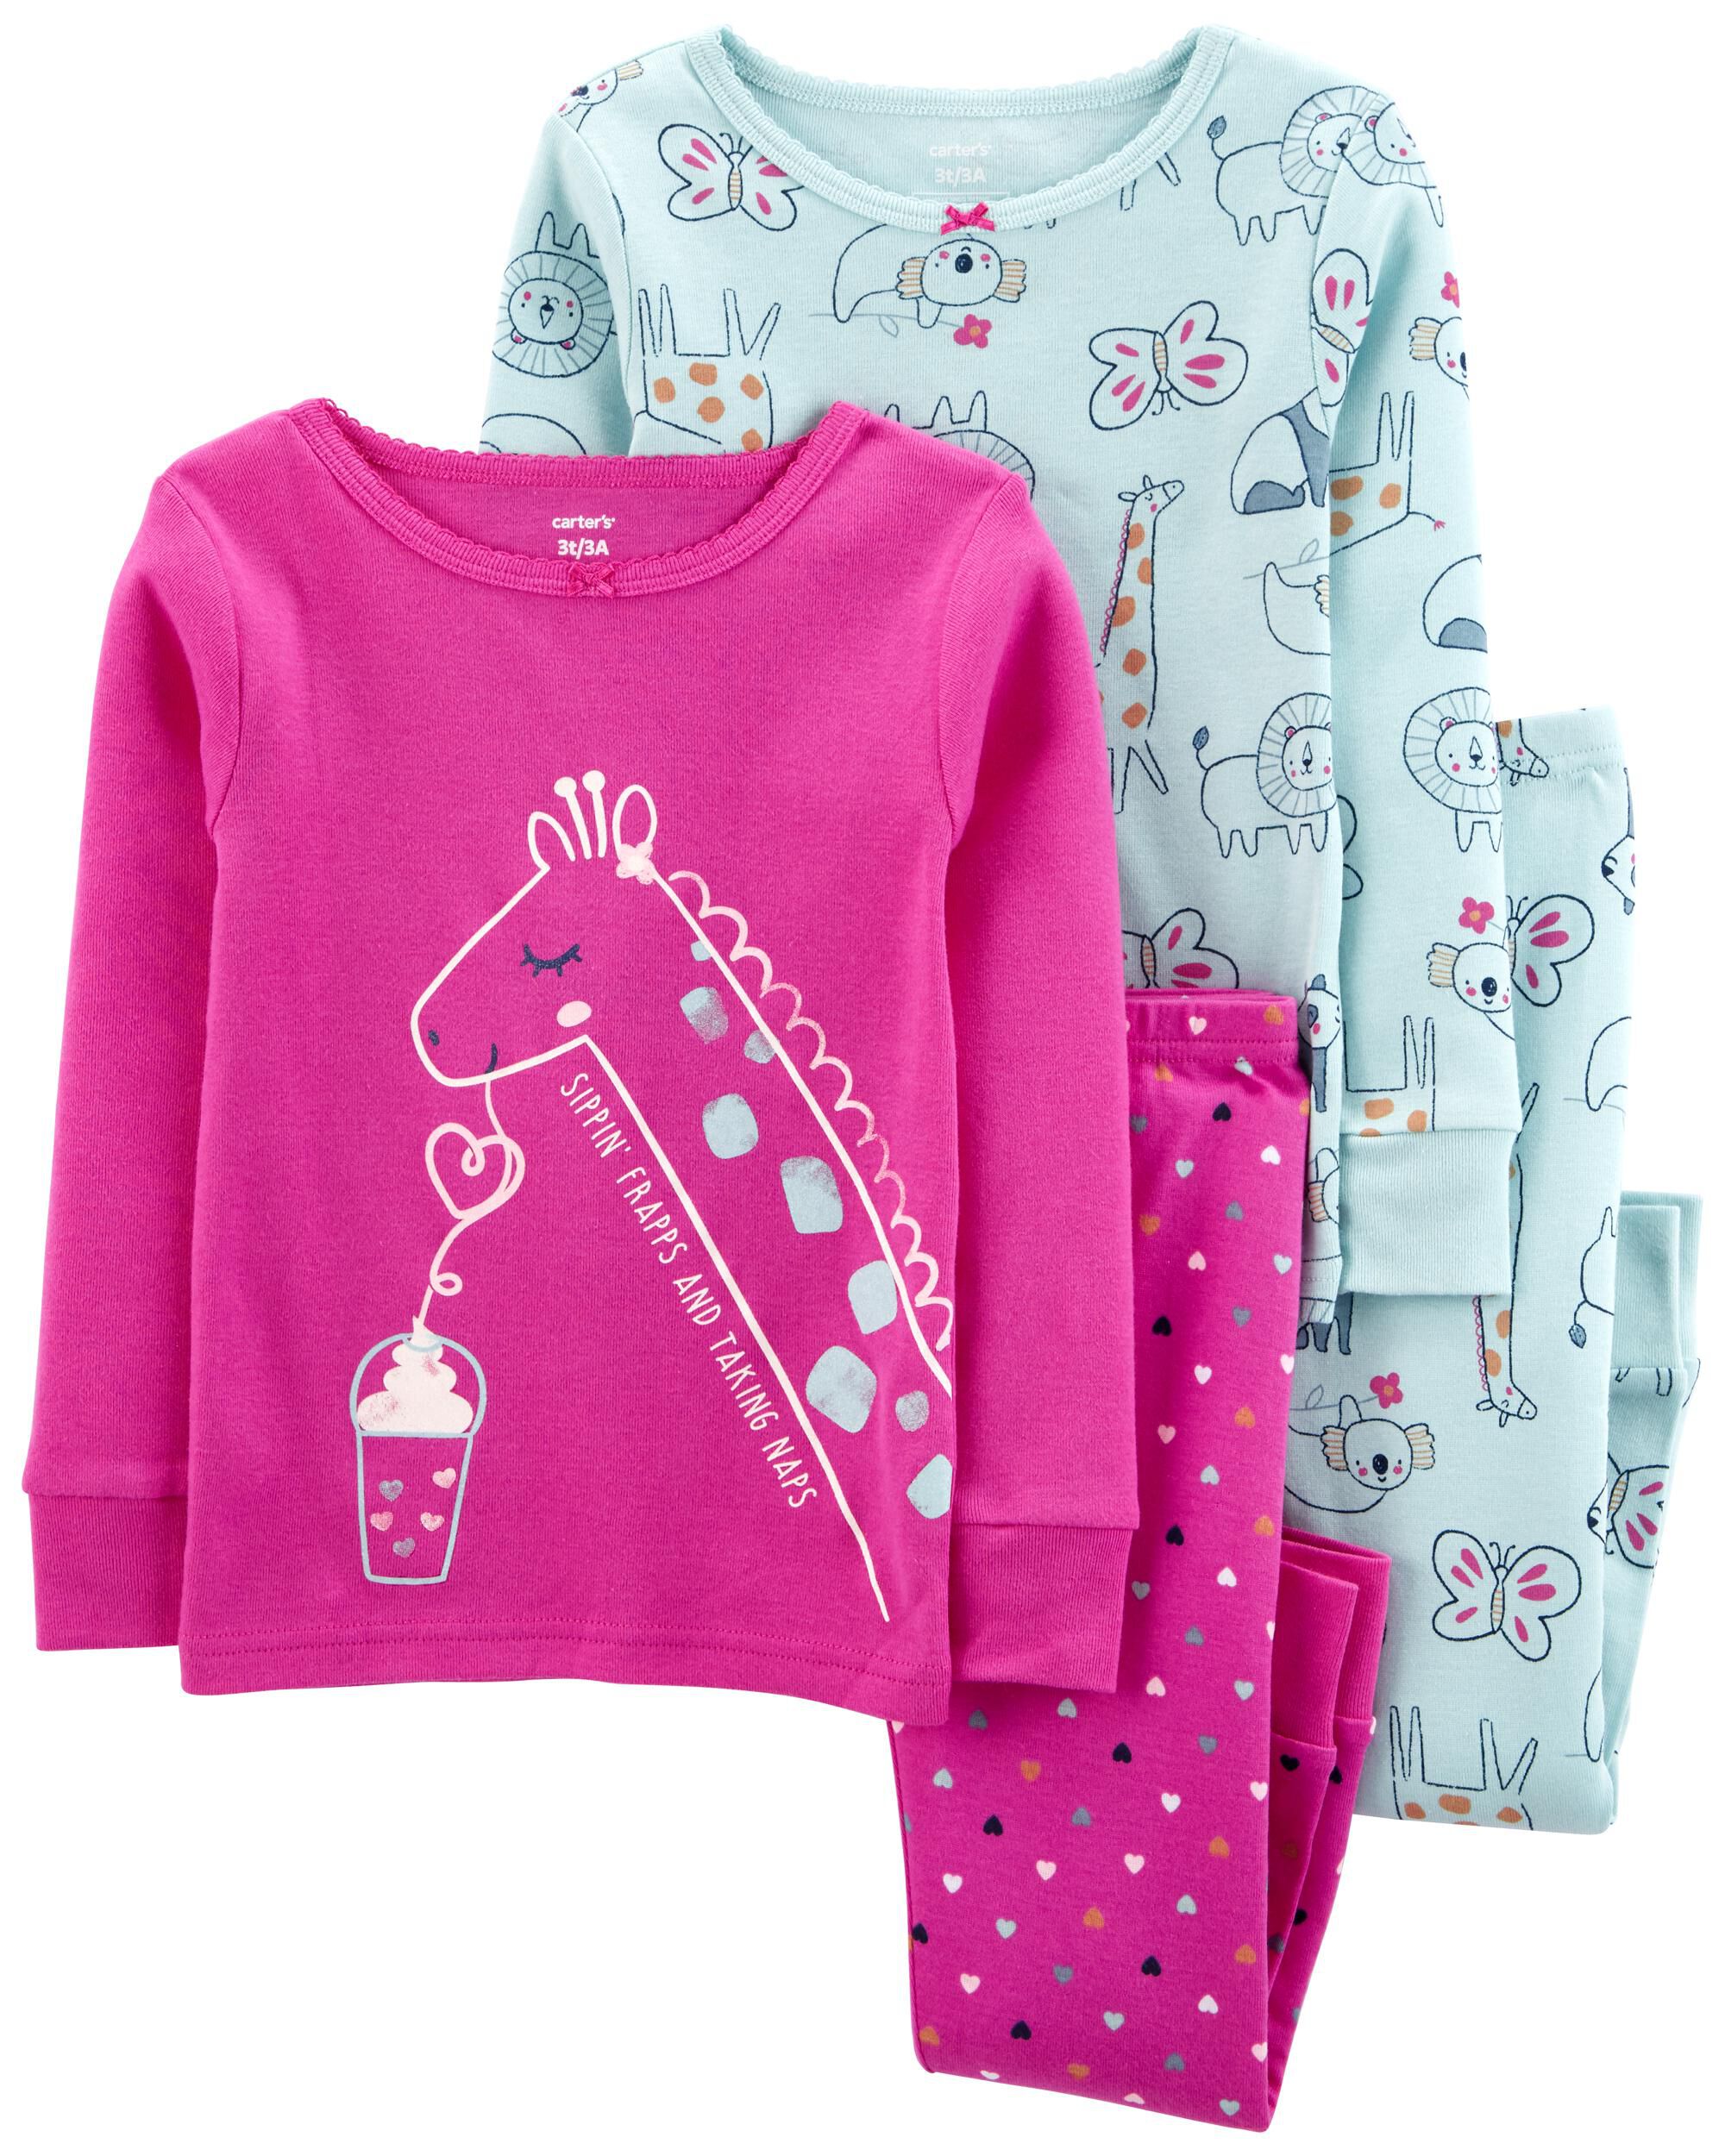 Carter's 4 Piece Rainbow Cloud Moon Cotton Pajamas Set Toddler Girls Size 2T 5T 